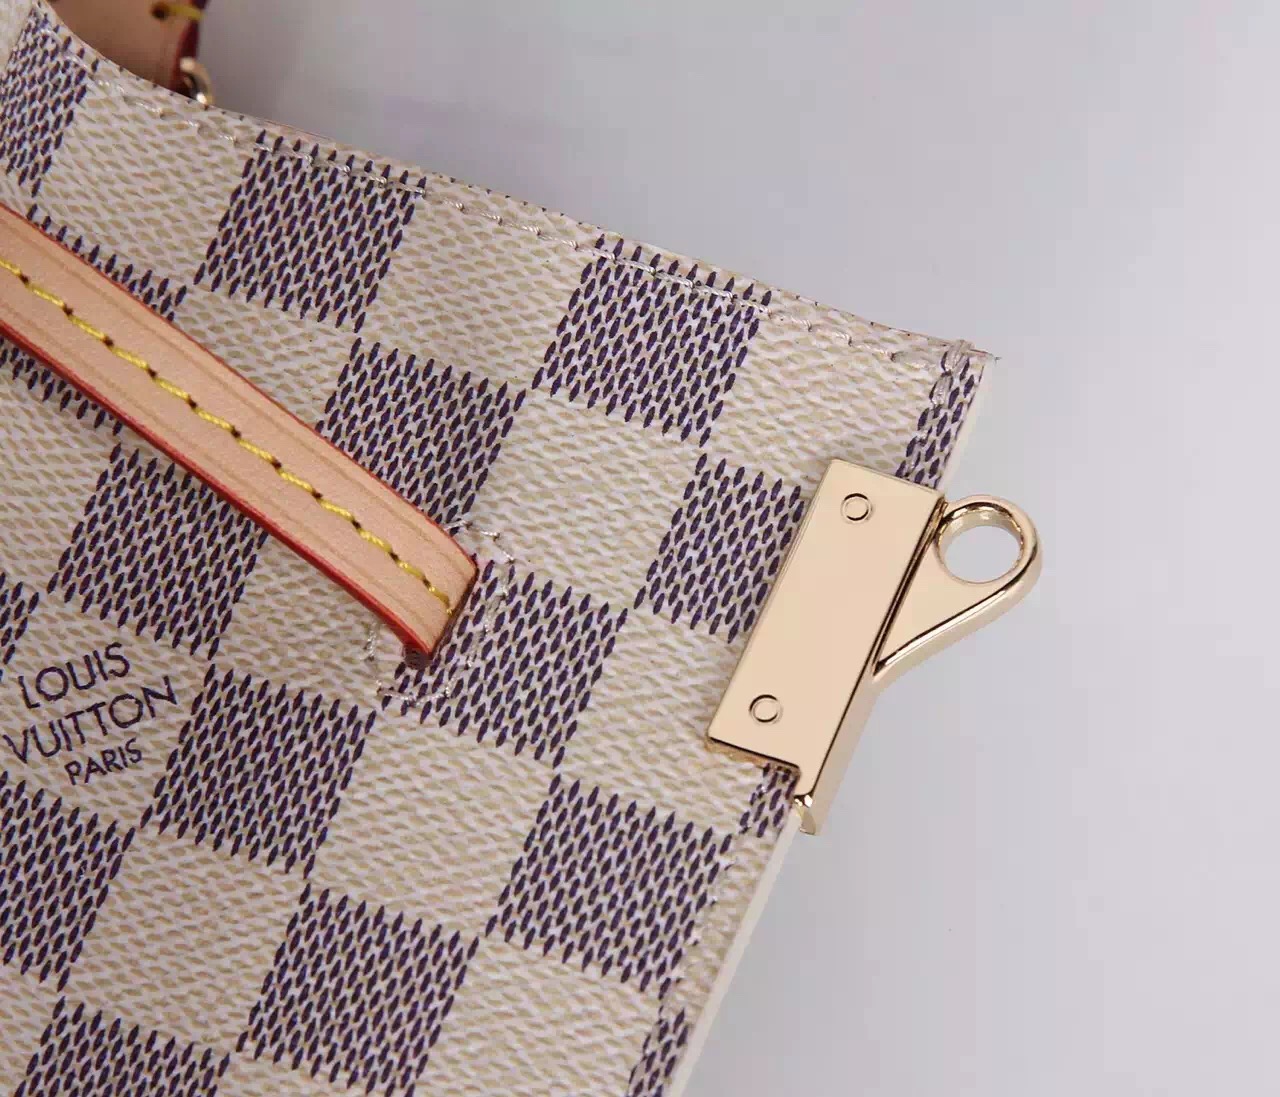 Louis Vuitton Damier Azur Canvas Shoulder Bag 41579 